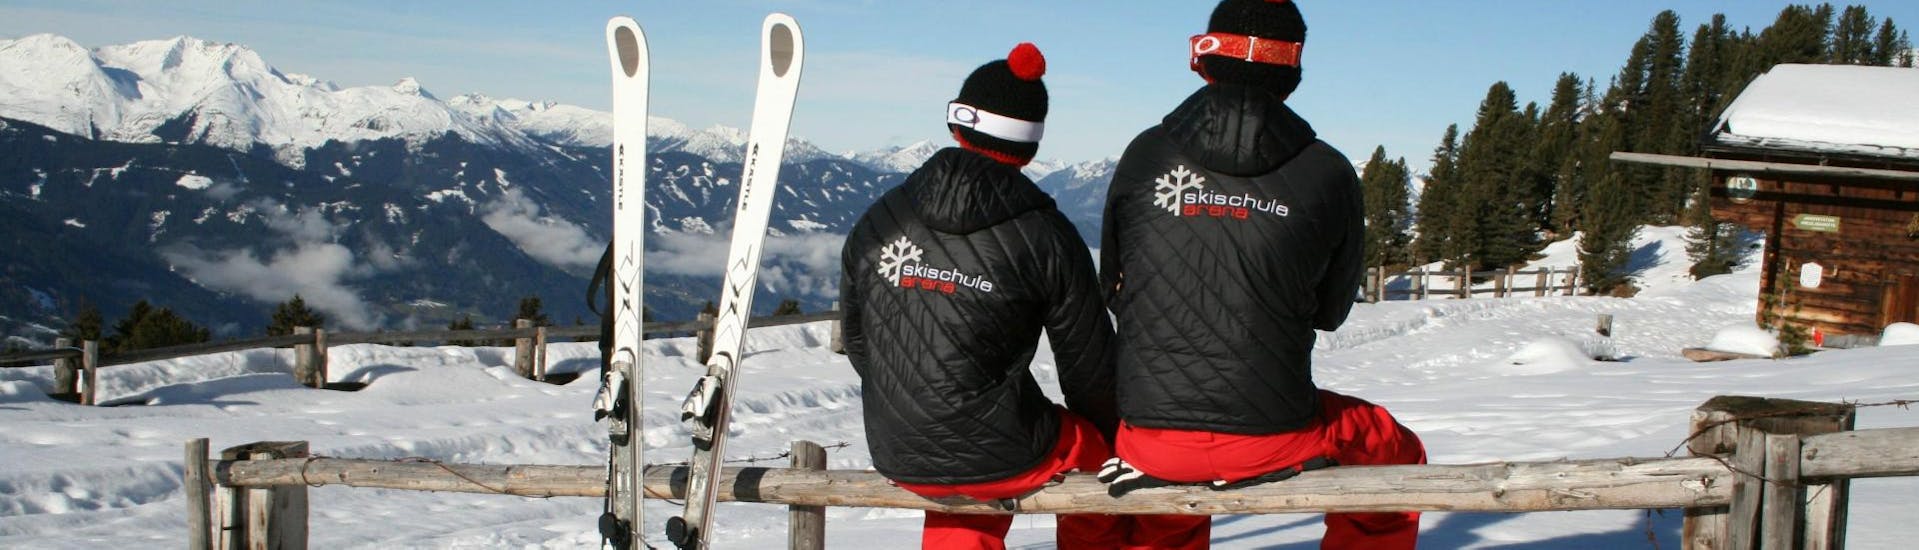 Als de skilessen voor volwassenen - beginners voorbij zijn, nemen twee skileraren van Skischule Arena in Zell am Ziller een pauze en genieten van het prachtige uitzicht op de met sneeuw bedekte bergen.